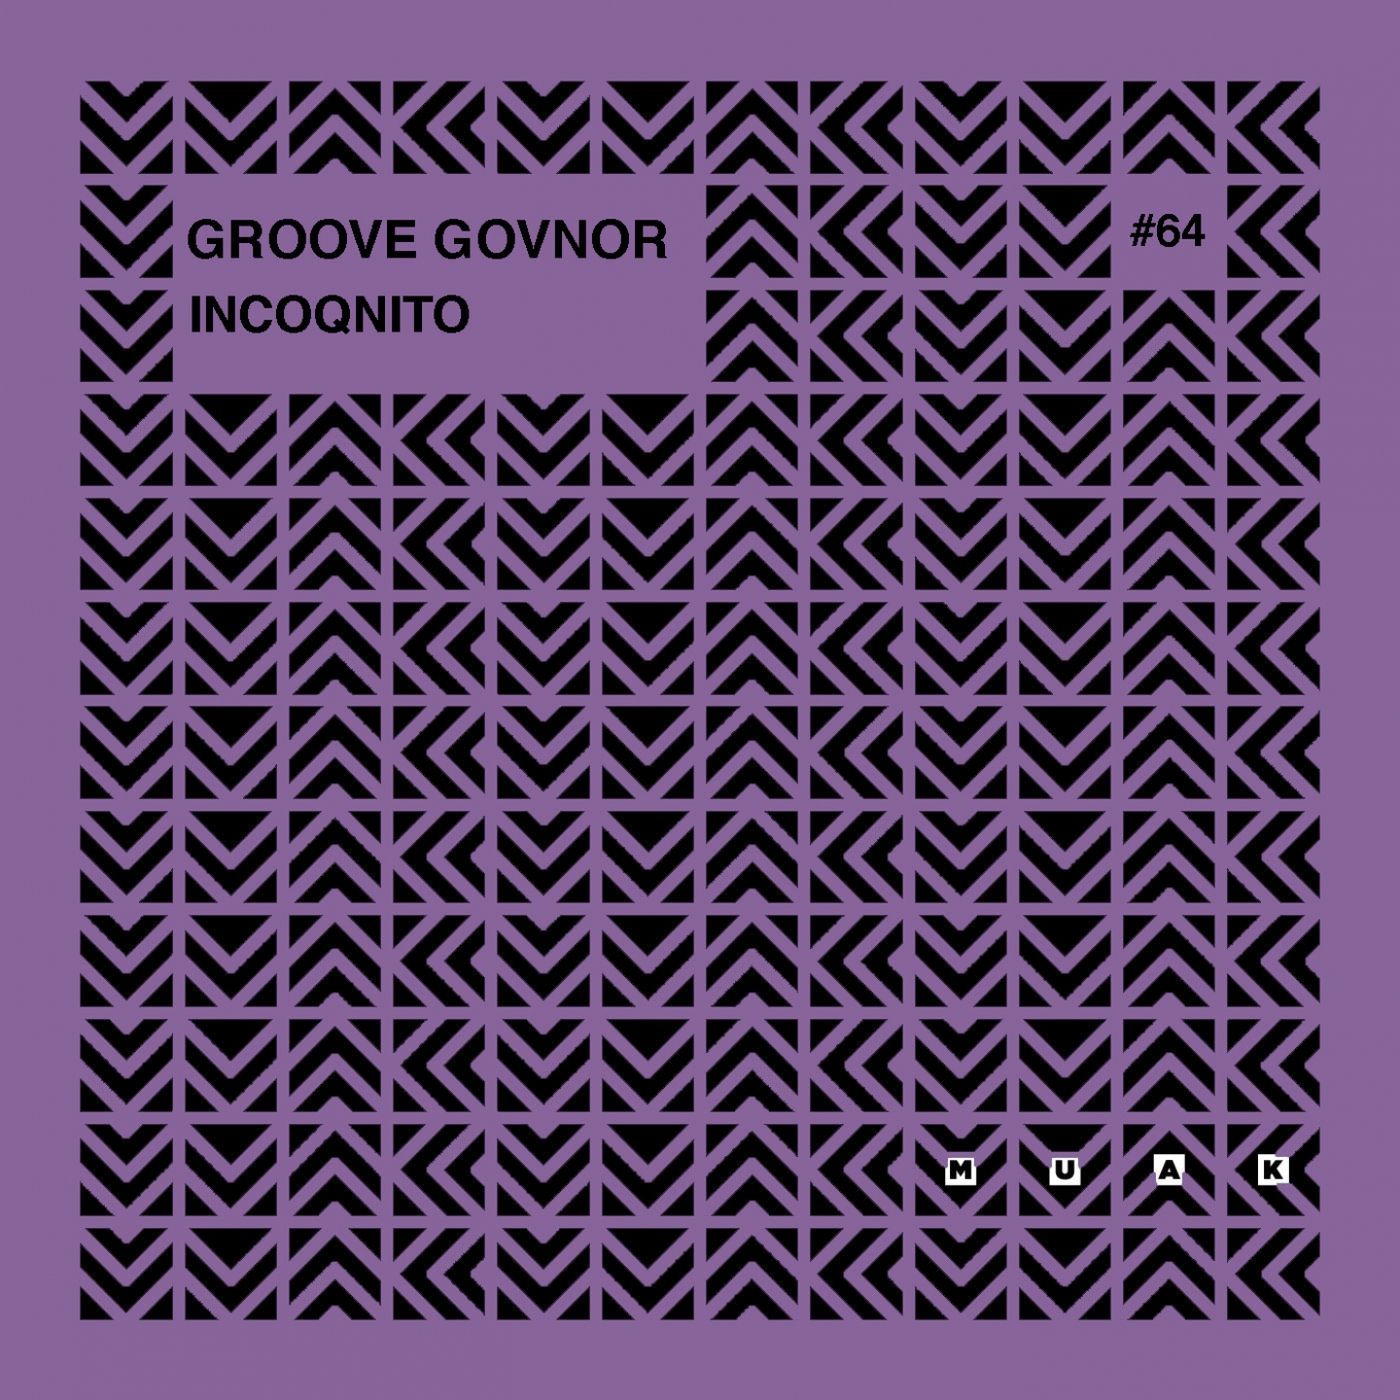 Groove Govnor - Incoqnito / Muak Music